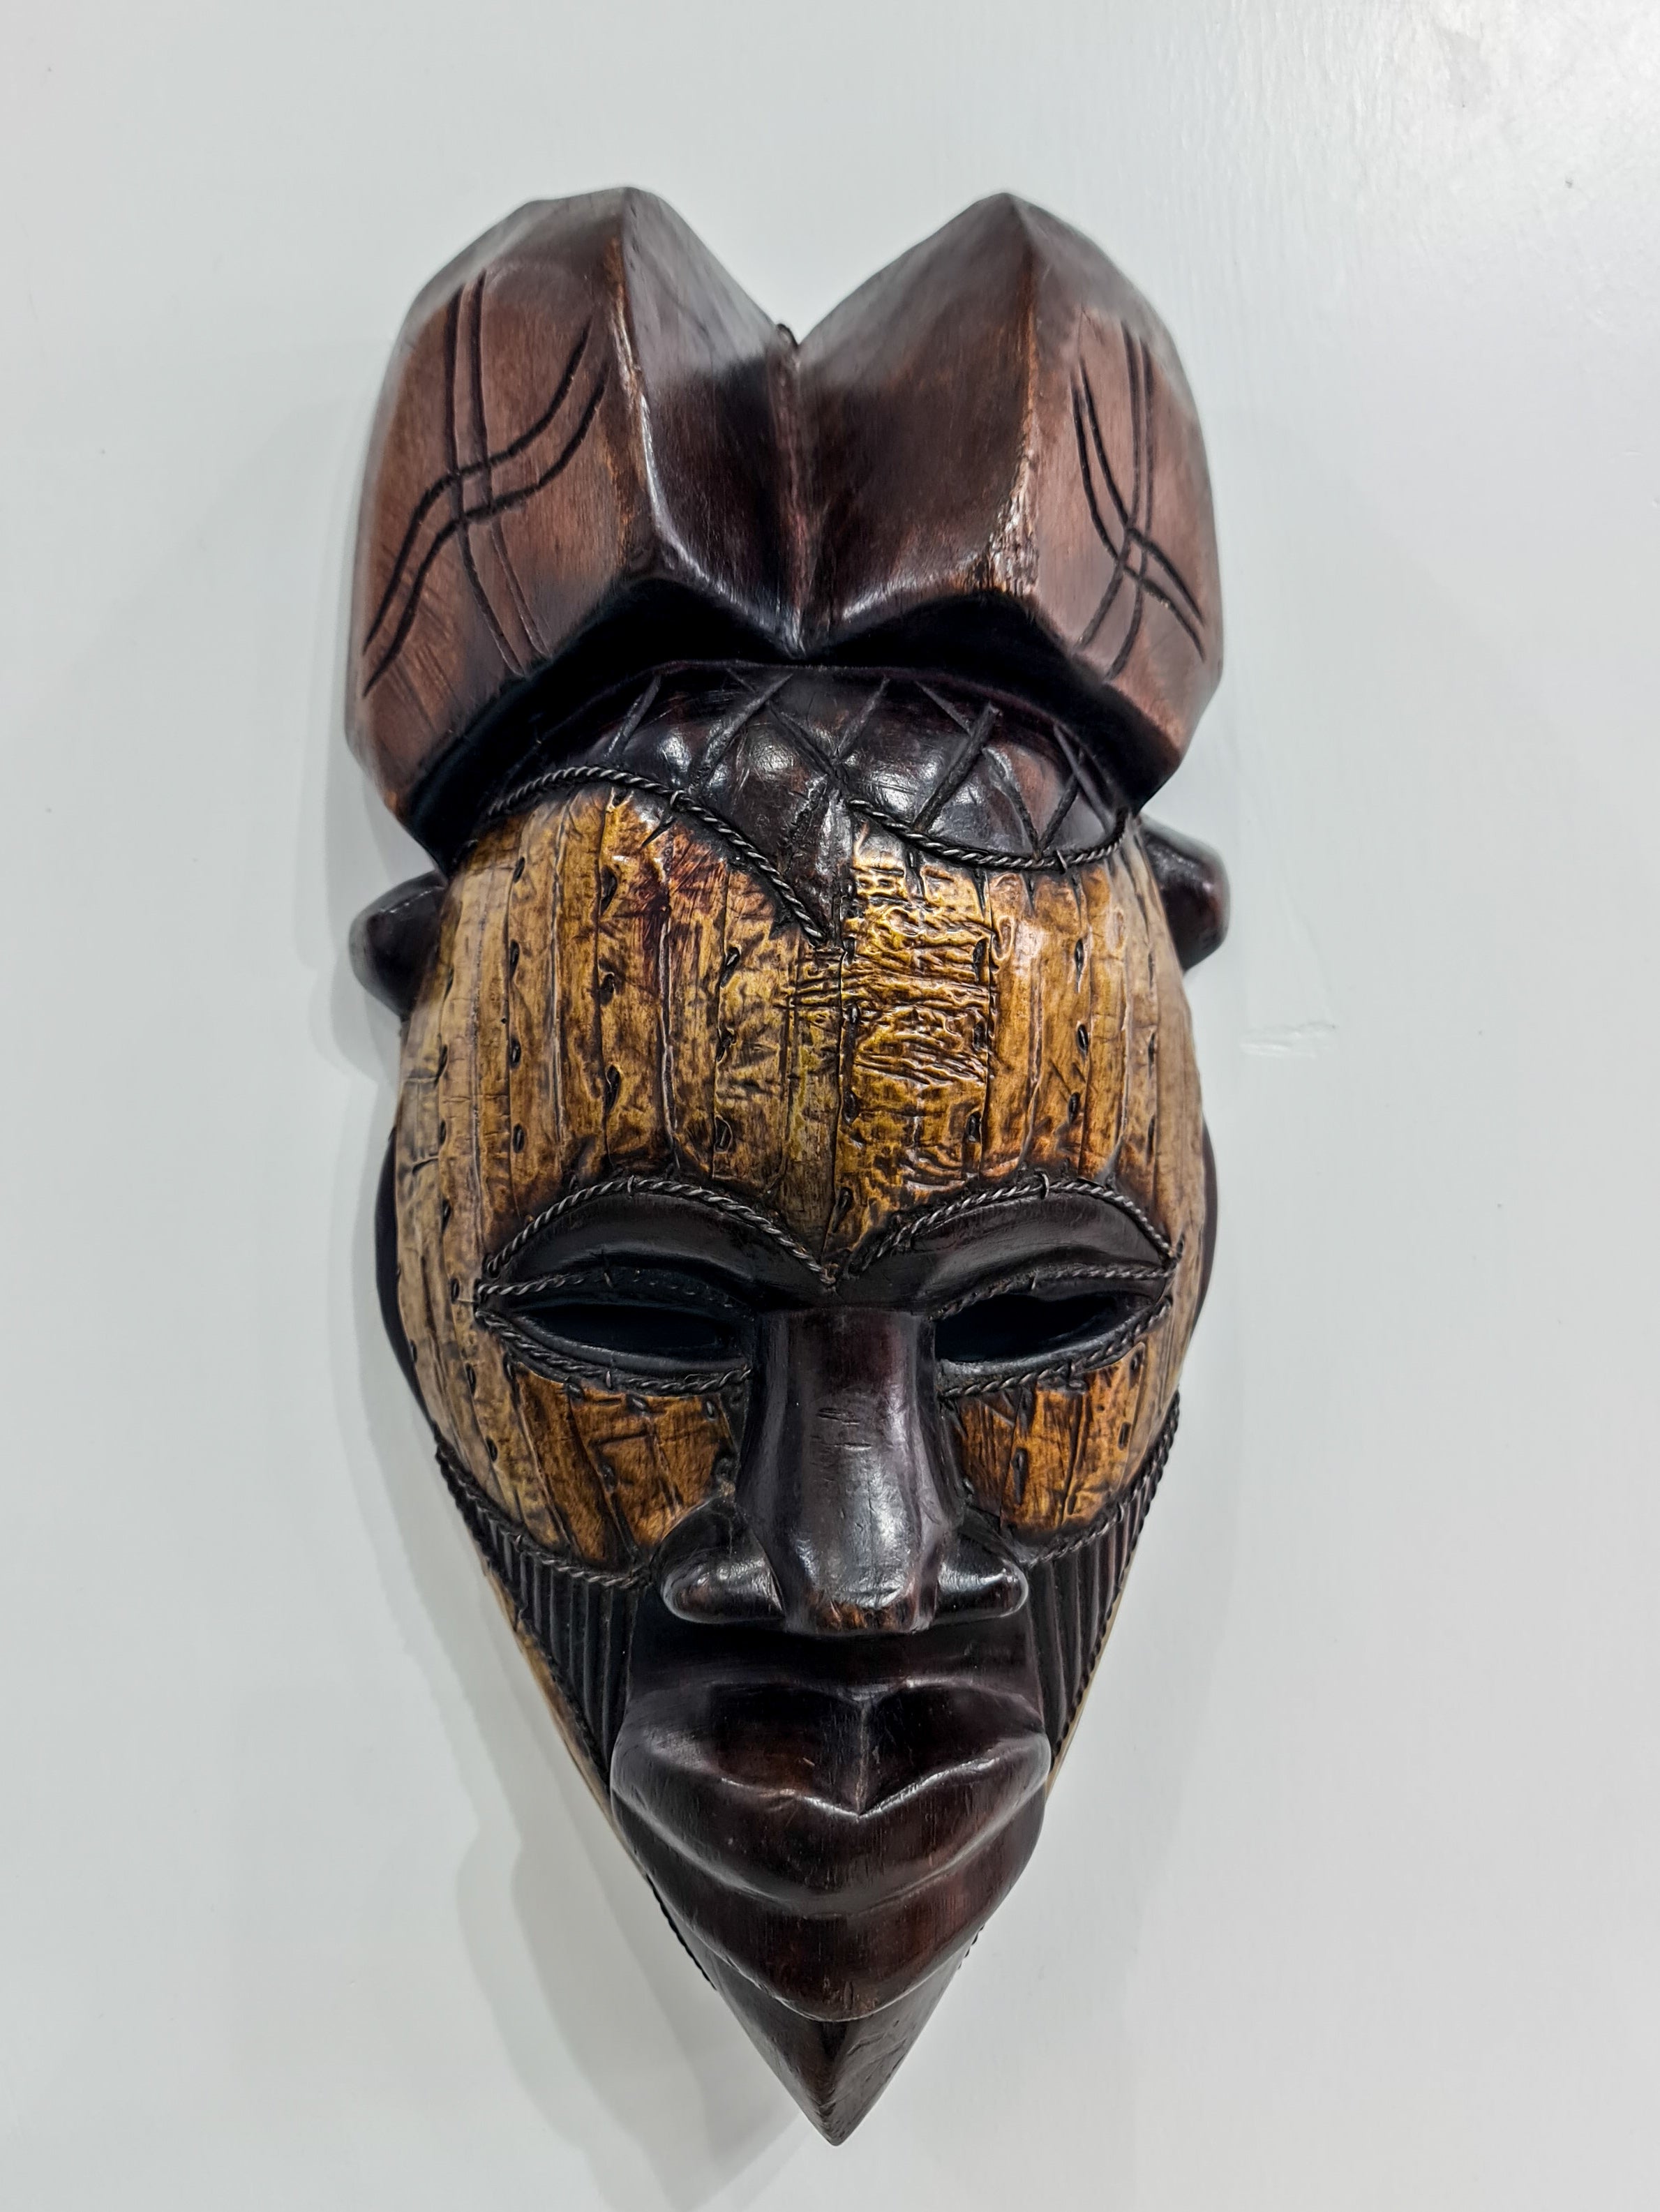 WD Tikar Tribe  Mask